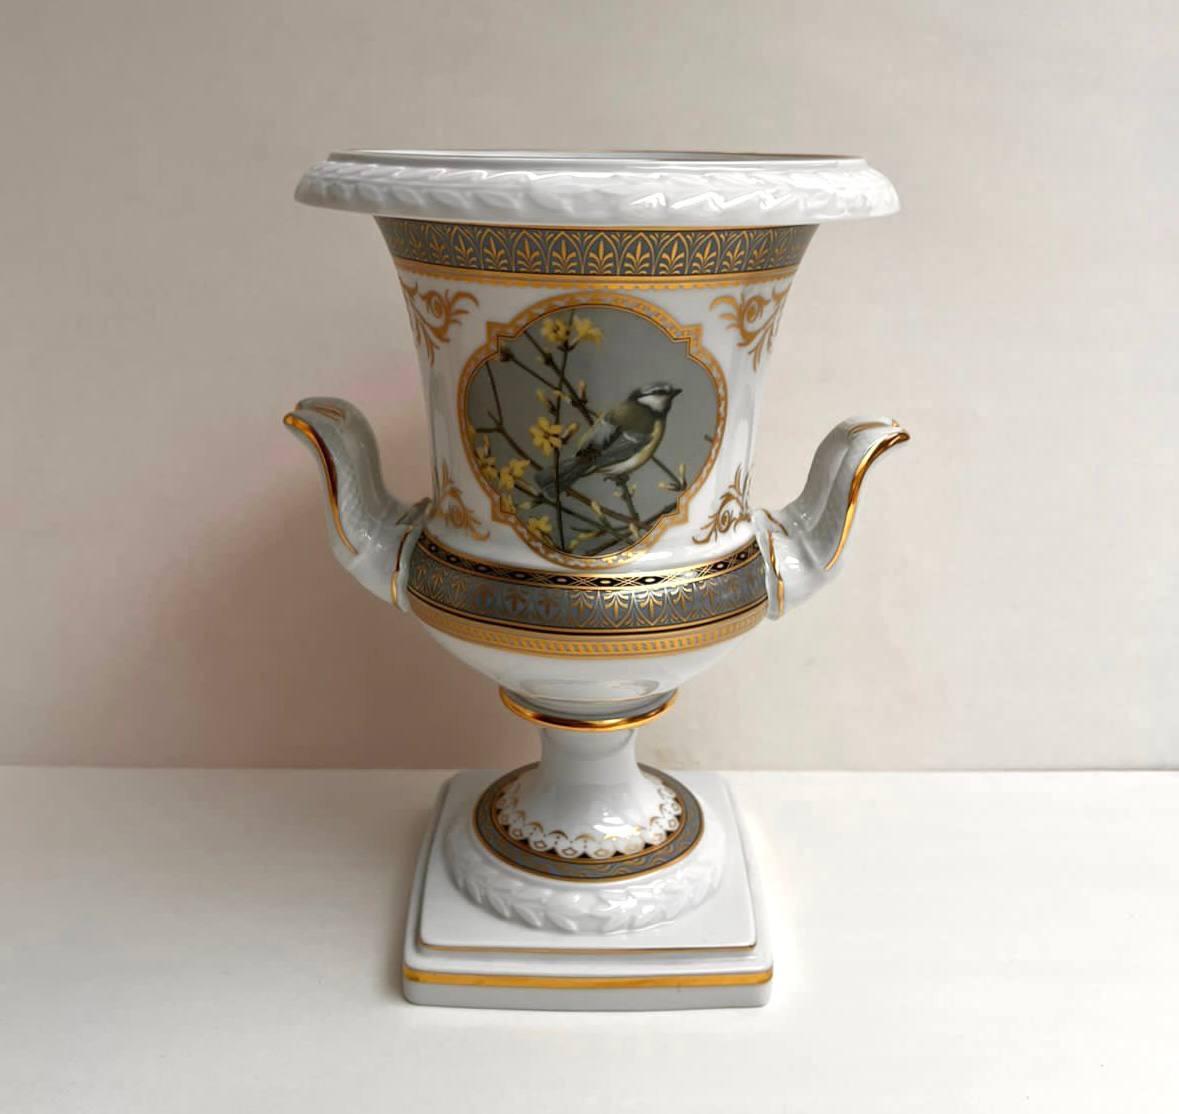 Attraktive Vintage-Vase mit Griffen von Kaiser, Pavillon, Deutschland.

Balusterförmige Vase aus hochwertigem weißem Porzellan mit Vergoldung und grüner Farbe, verziert mit einem Gemälde, das einen Vogel auf einem Ast darstellt.

Unter der Vase